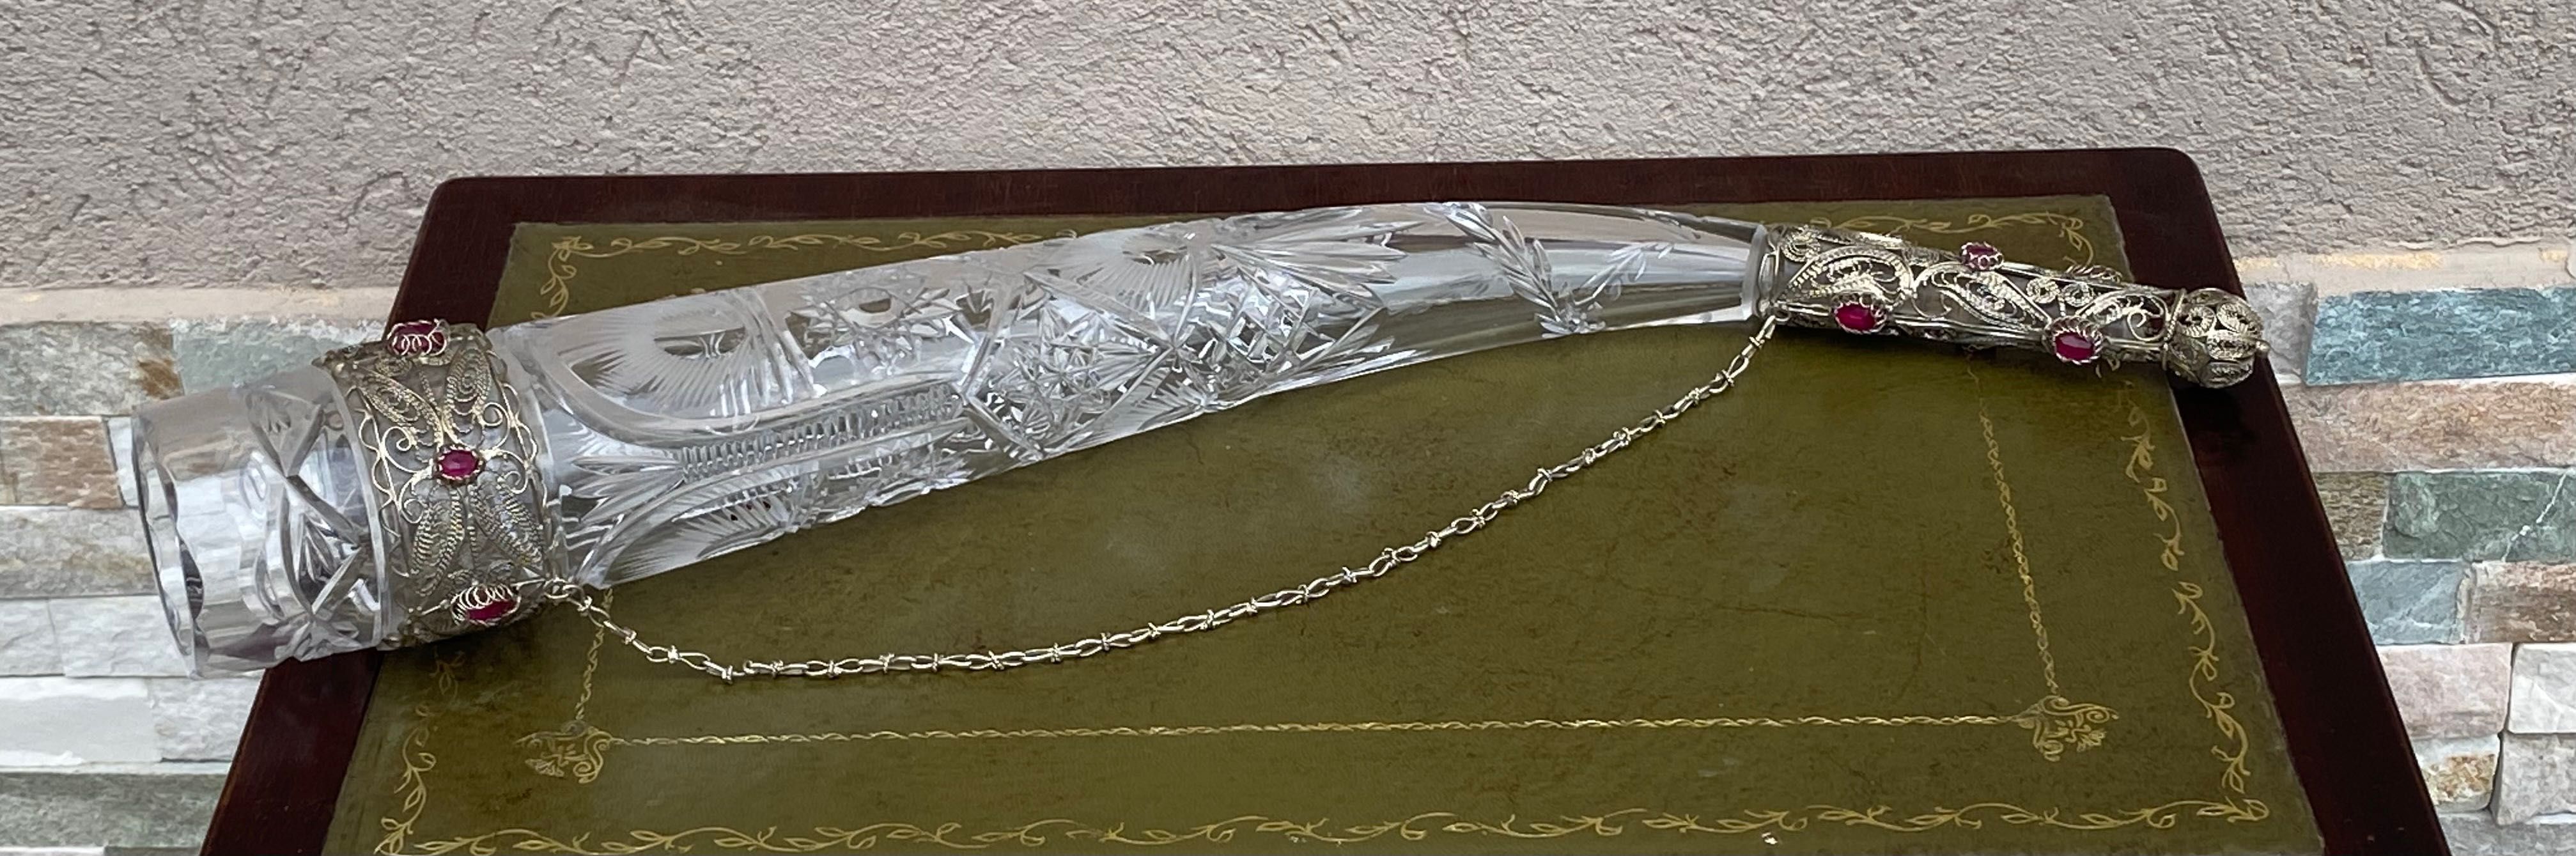 Cornul abundentei-cristal Bohemia-argint filigranat-Austria